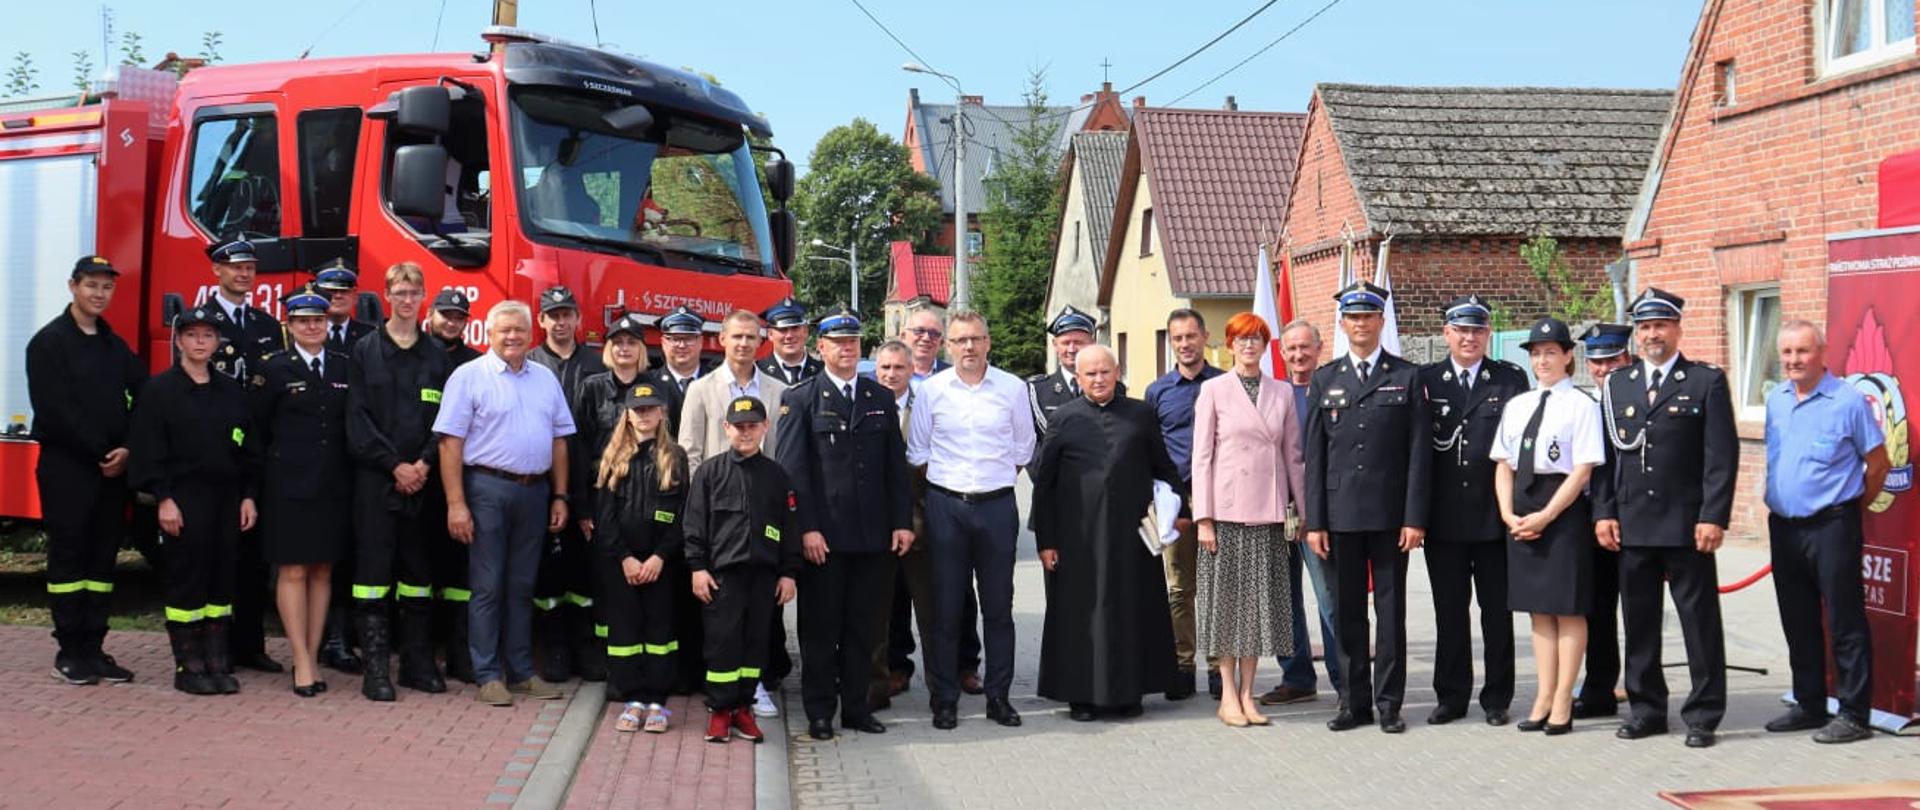 Przekazanie nowego samochodu ratowniczo-gaśniczego dla Ochotniczej Straży Pożarnej w Ołoboku.